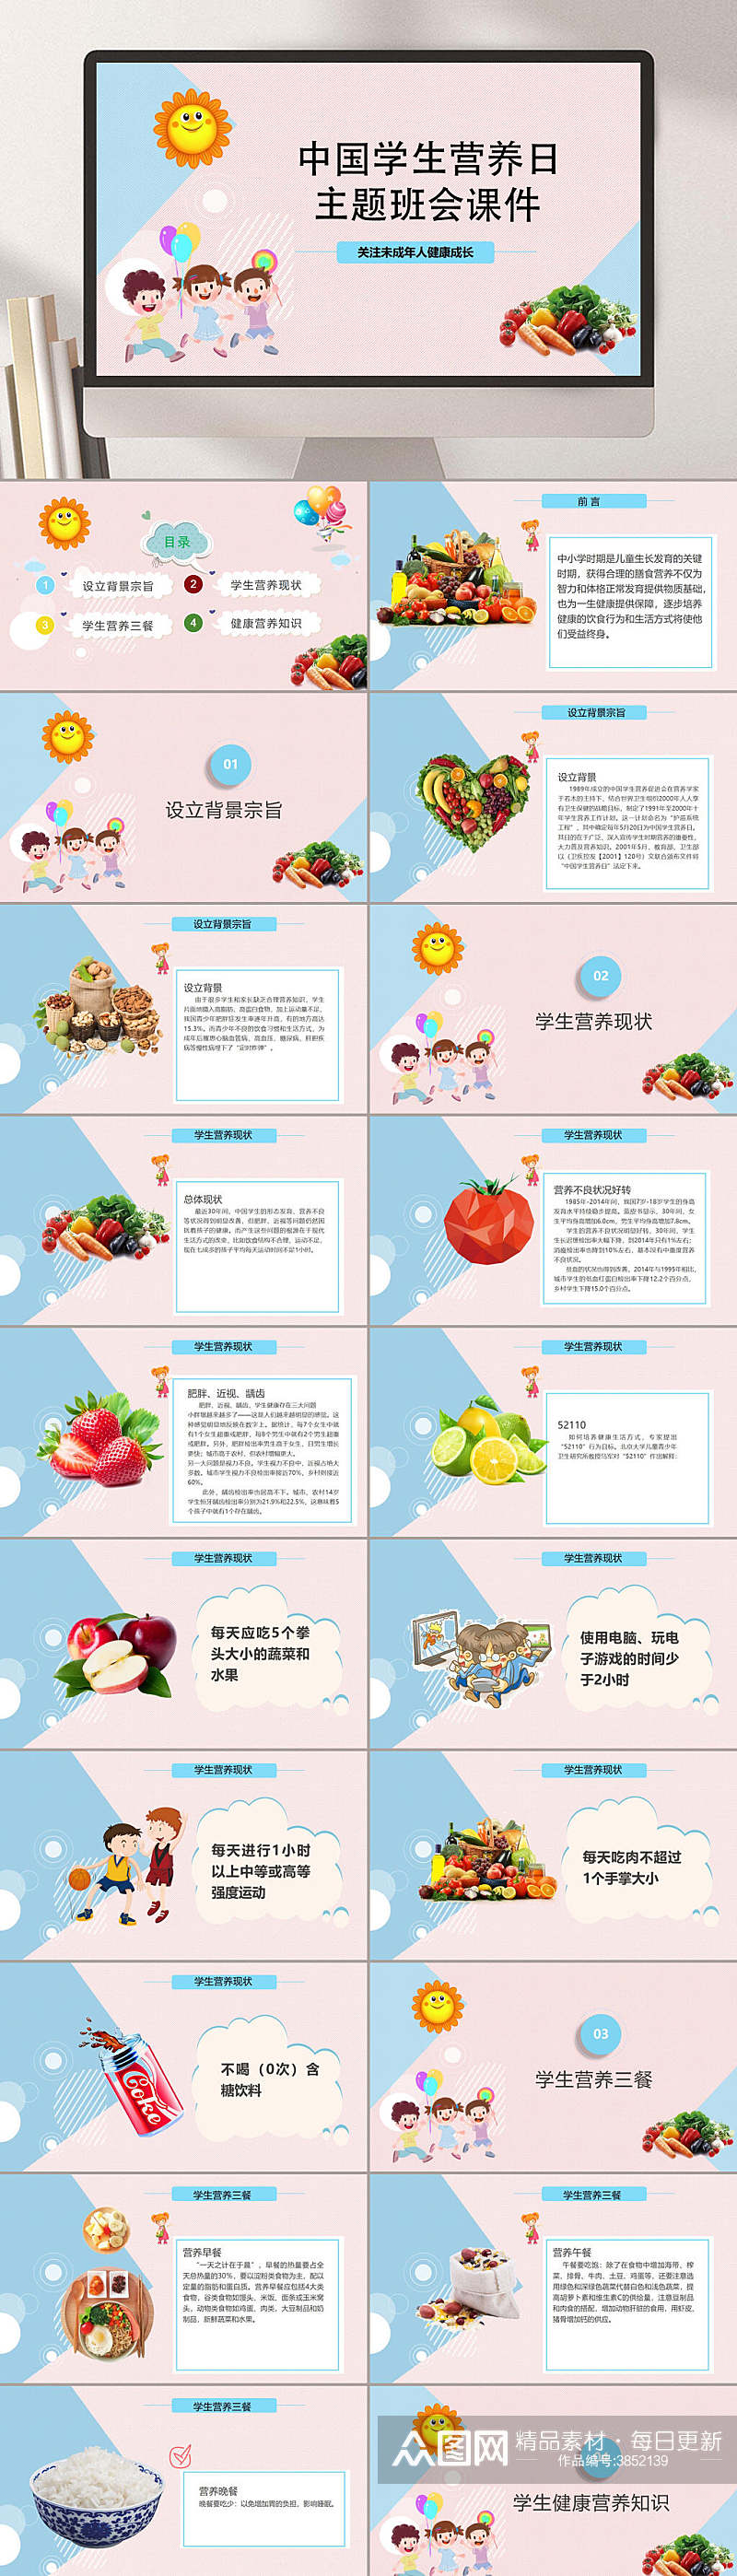 卡通中国学生营养日主题班会课件PPT素材